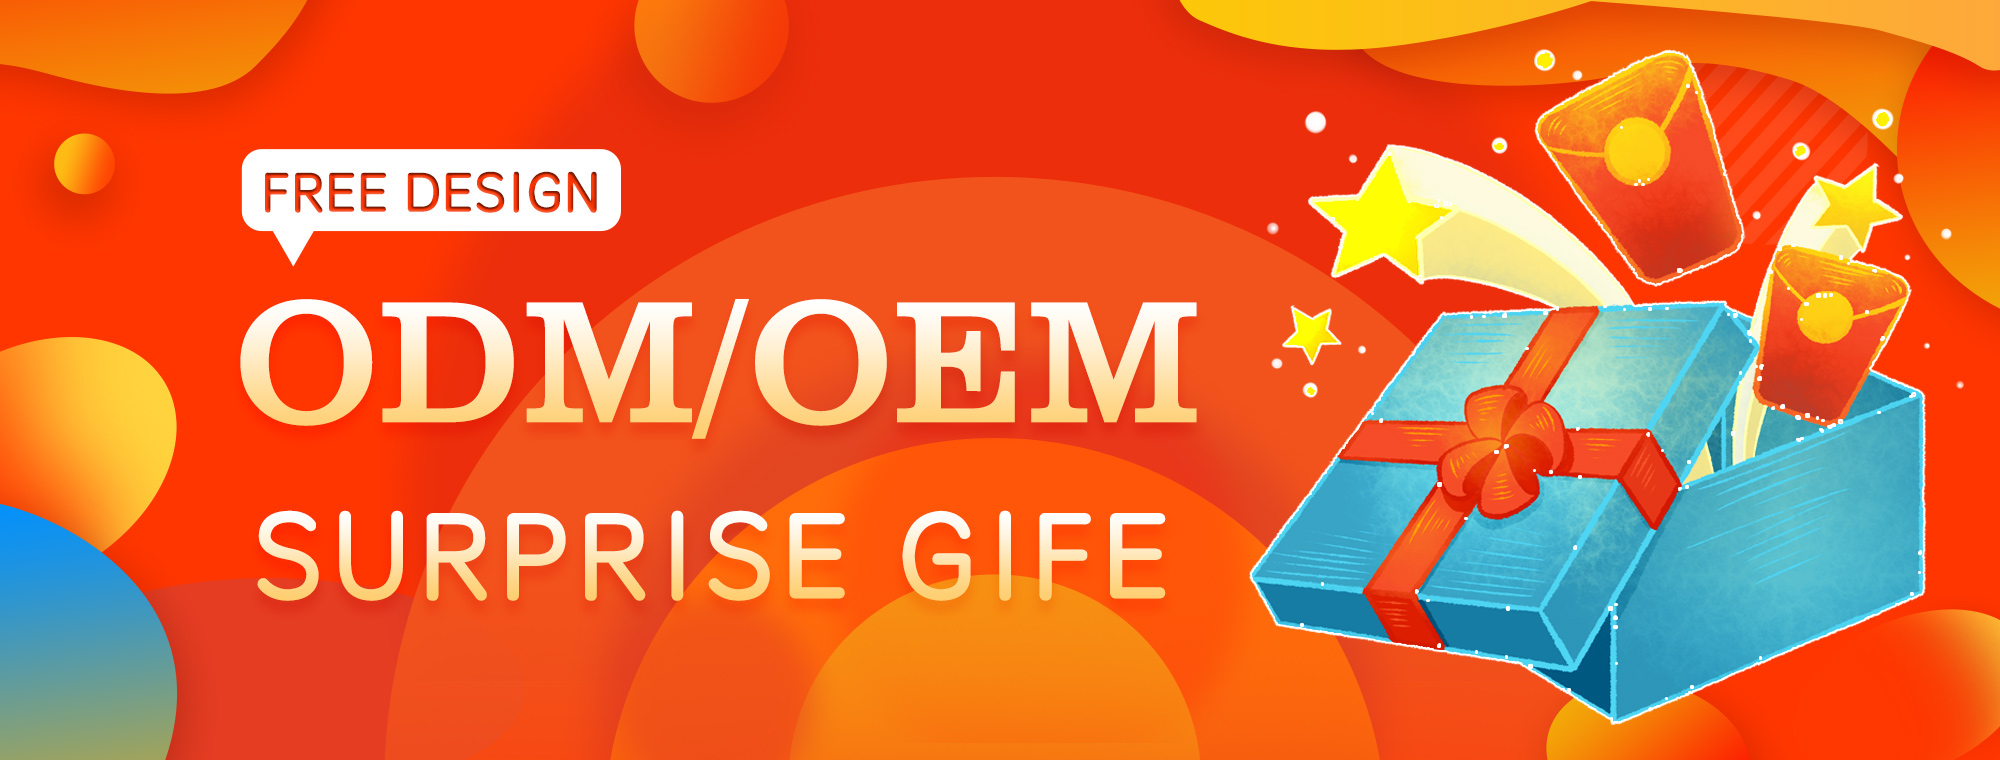 OEM&ODM | Free Design | Get a Surprise Gift